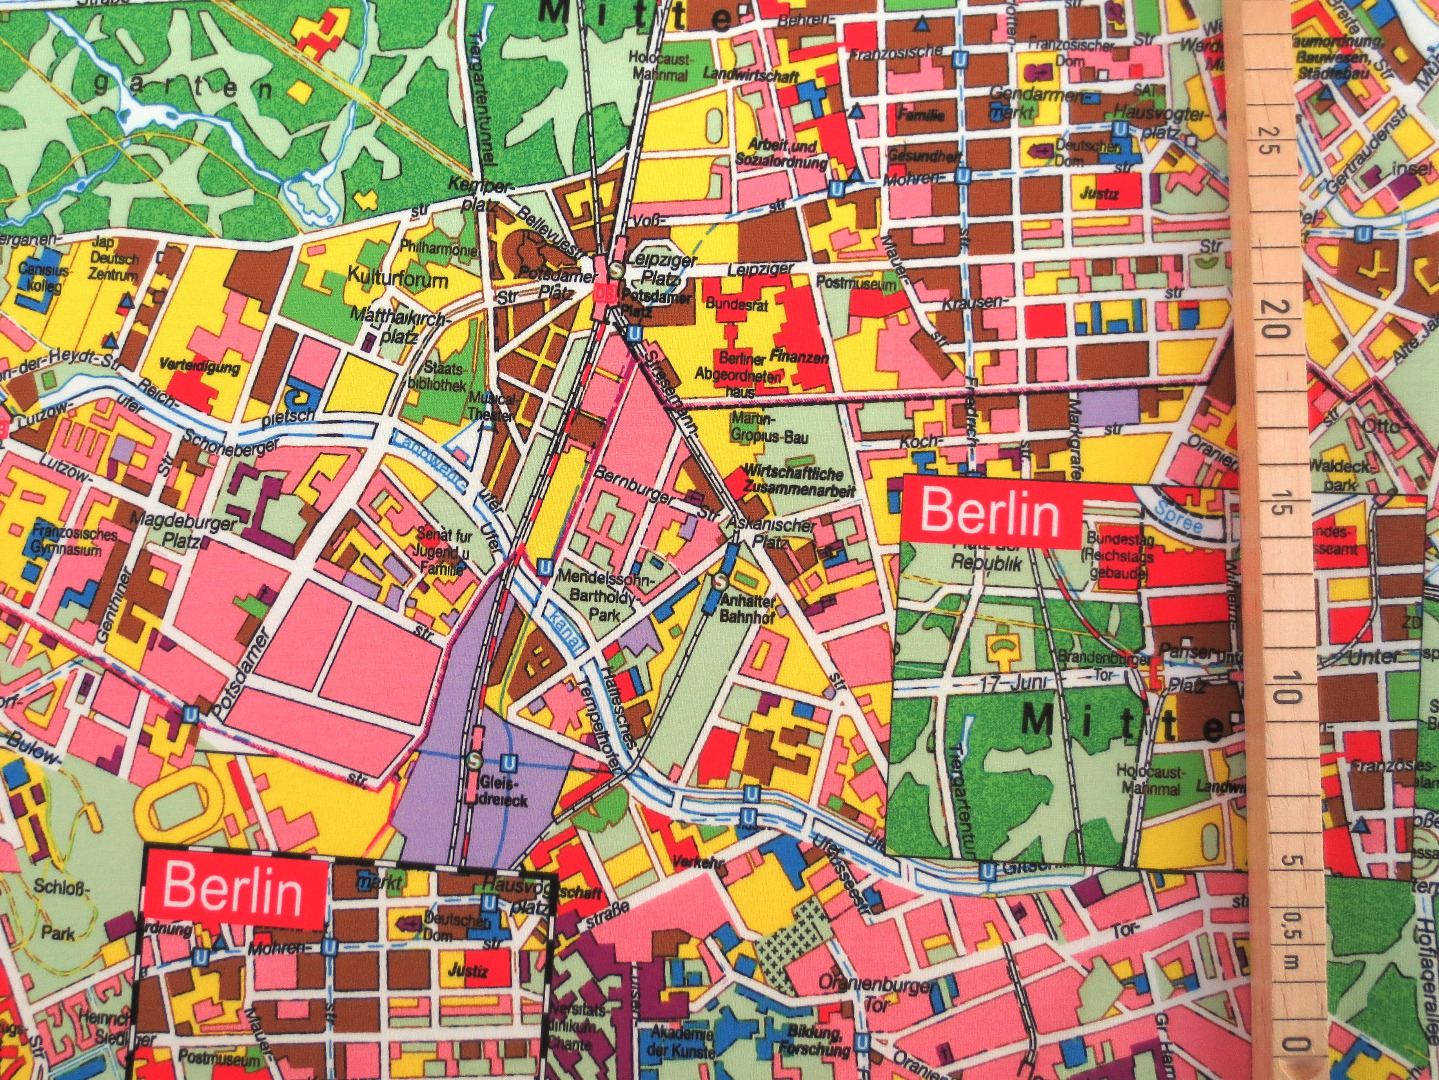 French Terry Berlin - Berlin Stadtplan 2